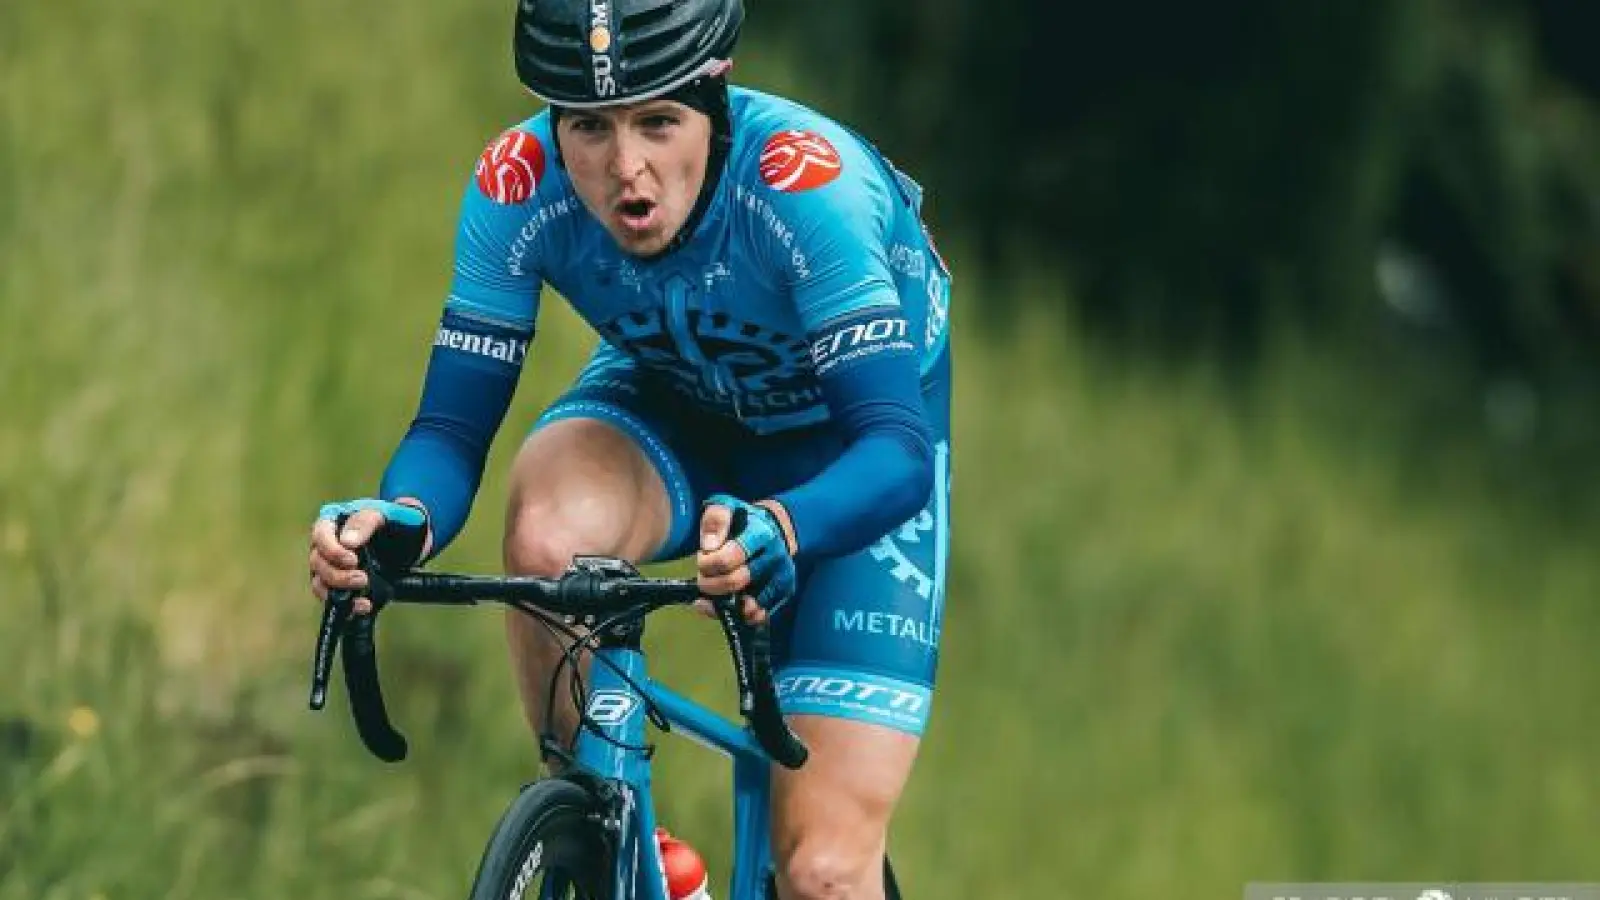 Die blaue Trikotfarbe   bleibt für den Aichacher Radsportler Fabian Schormair nach seinem Wechsel von P&amp;S Metalltechnik zum Team Felbermayr Wels Simplon die gleiche.	Foto: Marcel Hilger